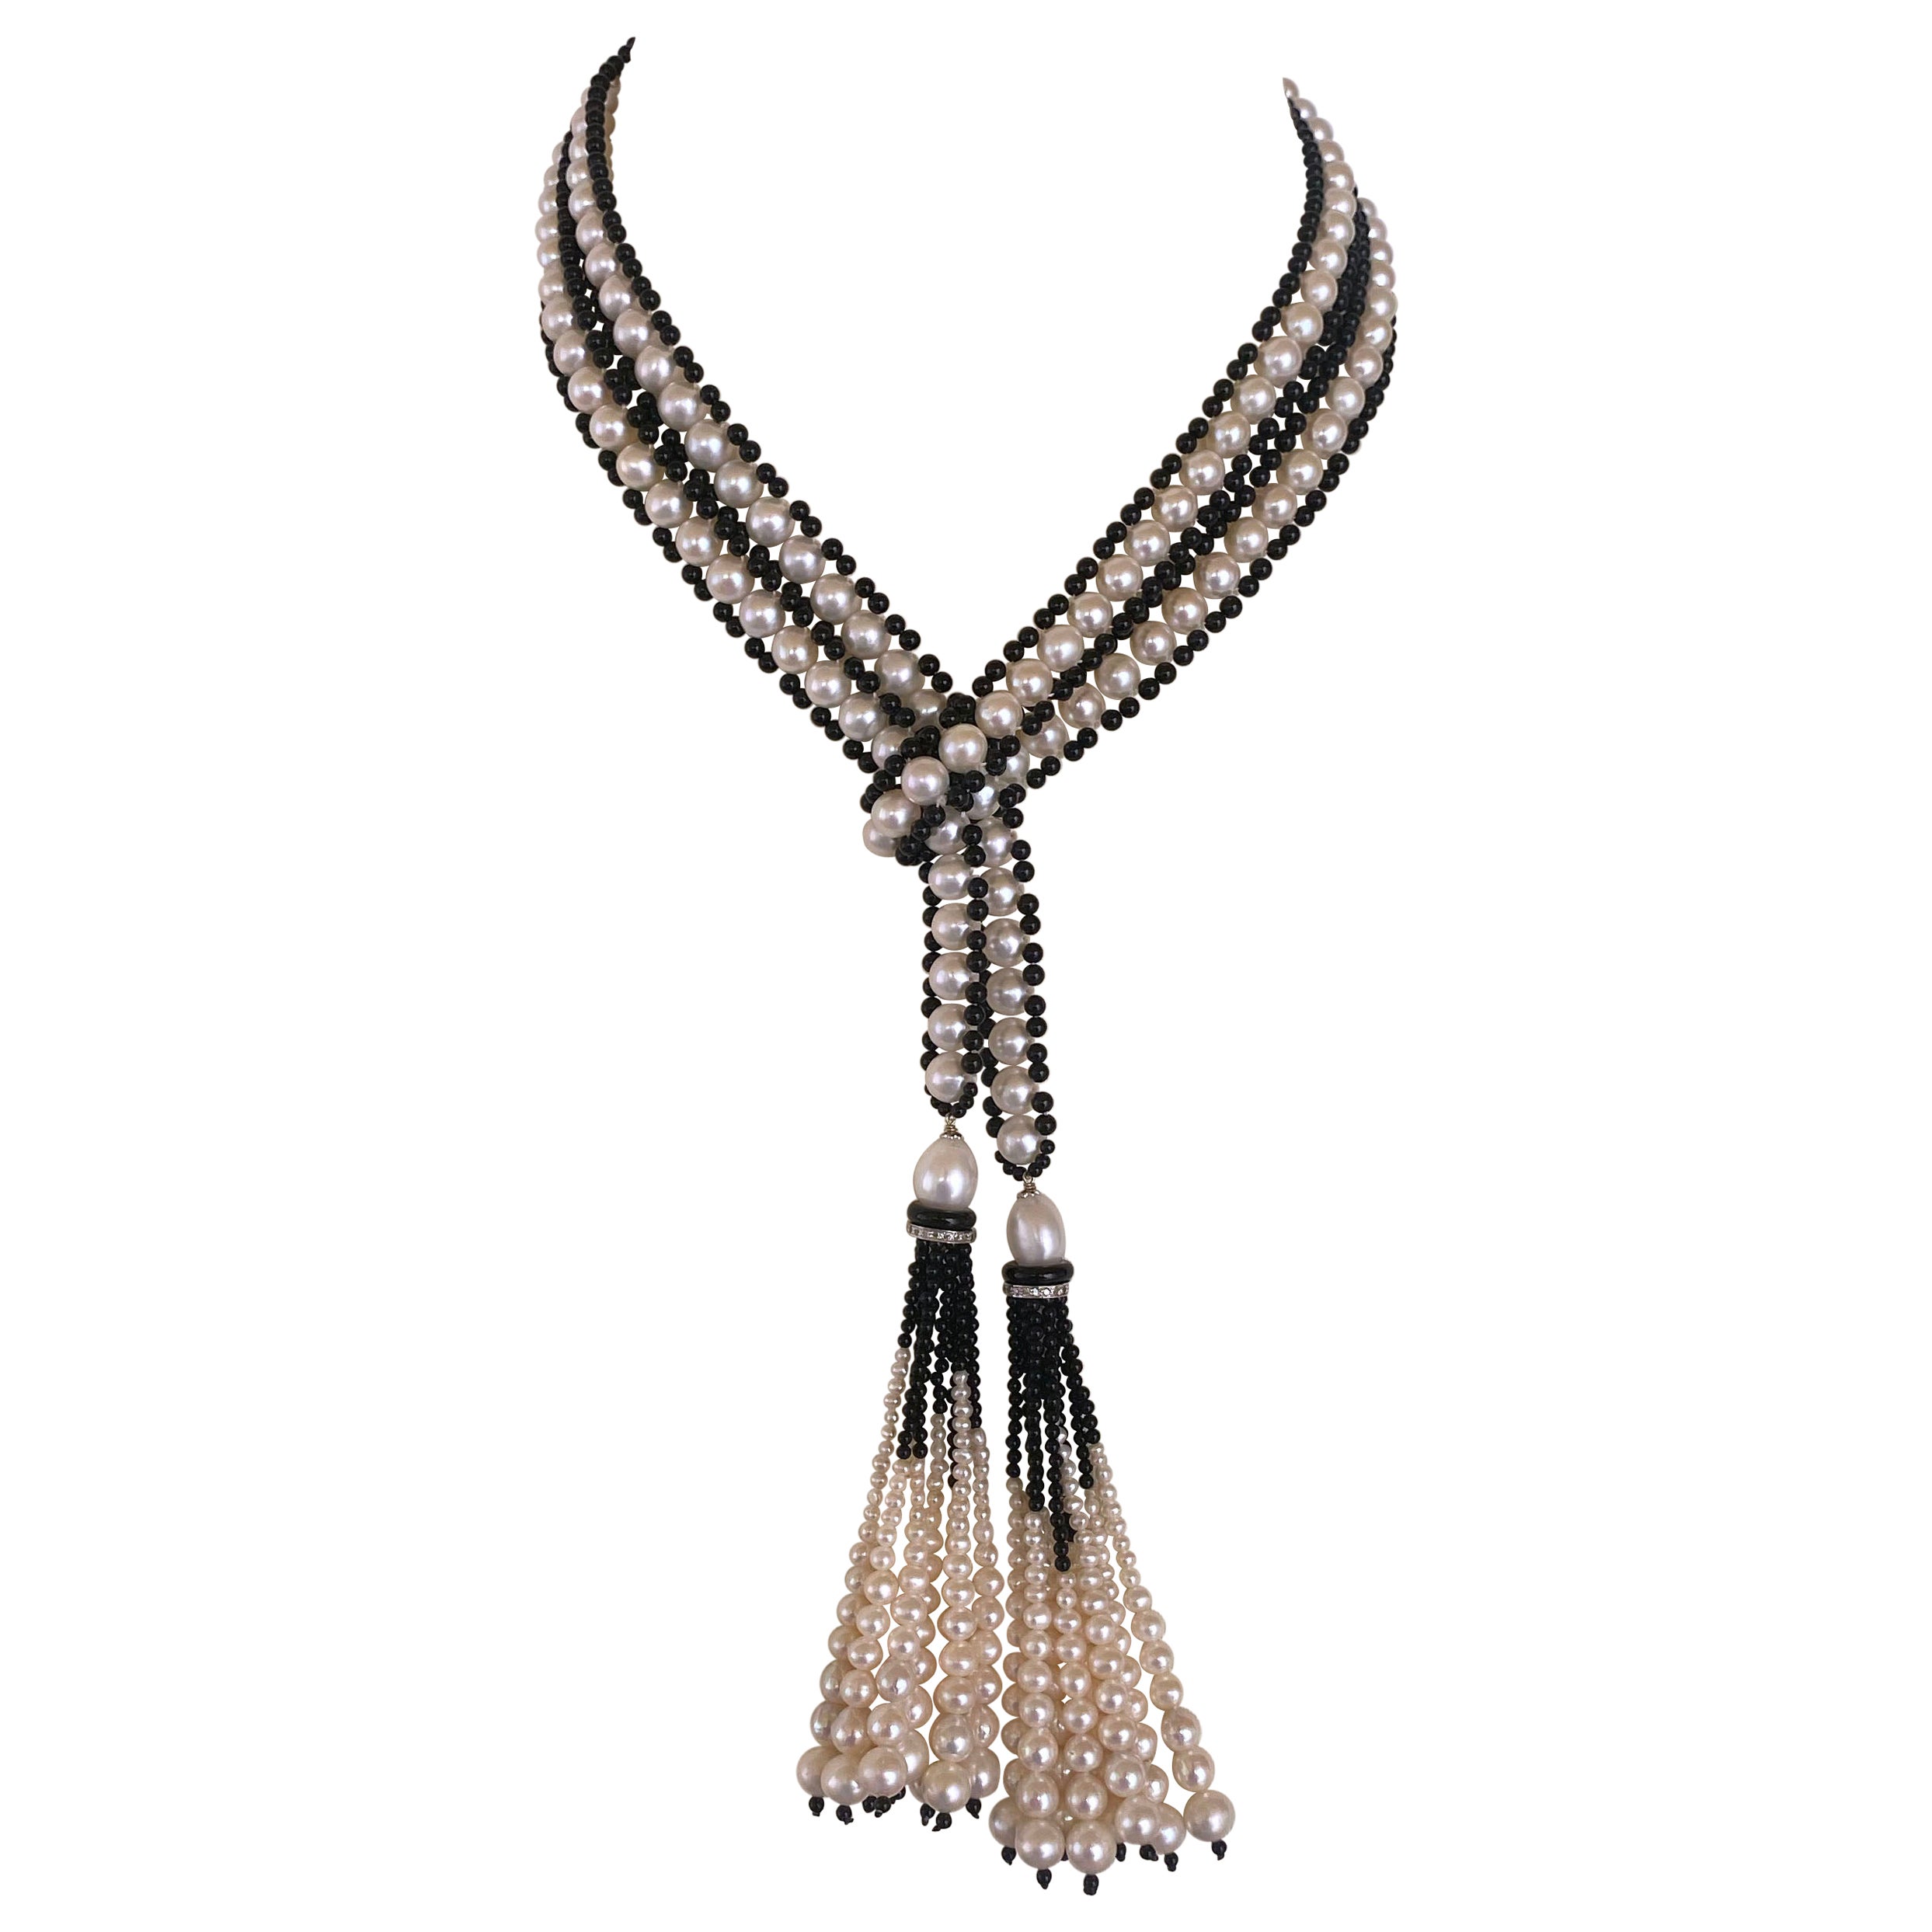 Marina J. Art Deco inspiriertes Perlen- und schwarzes Onyx-Sautoir mit abgestuften Quasten